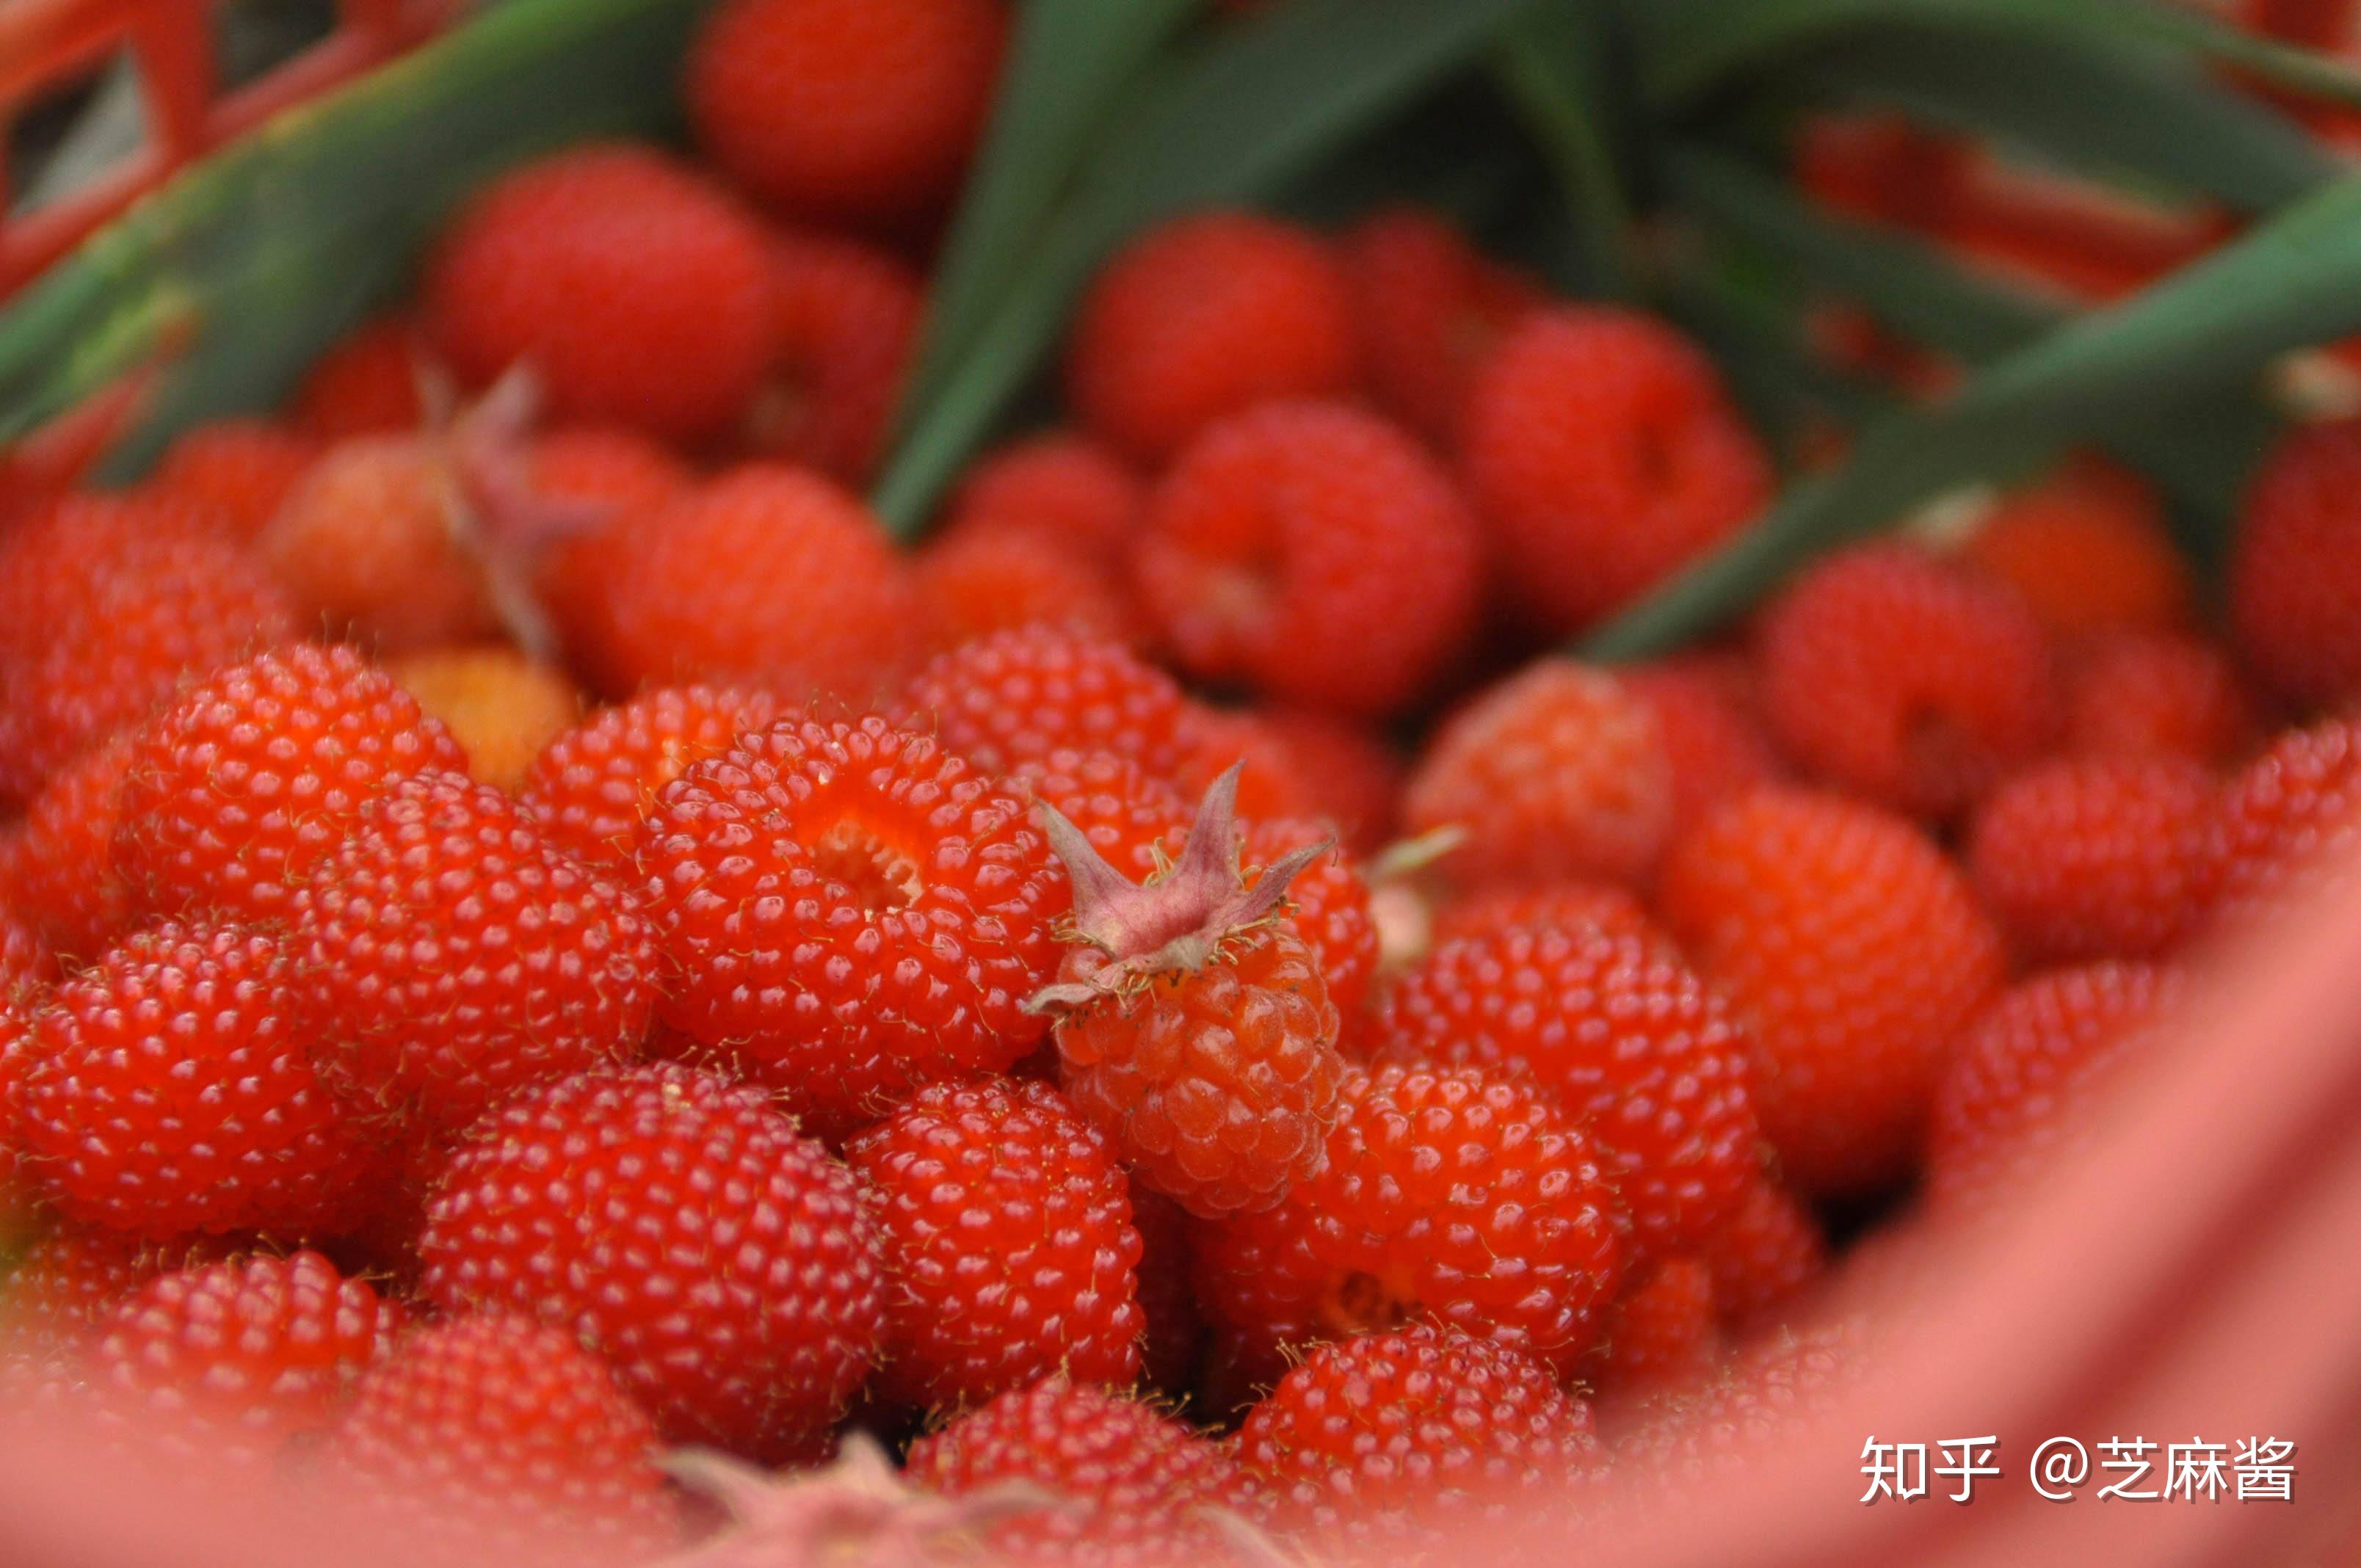 郴州市农科所将于27日开放蓝莓黄桃采摘-郴州新闻网